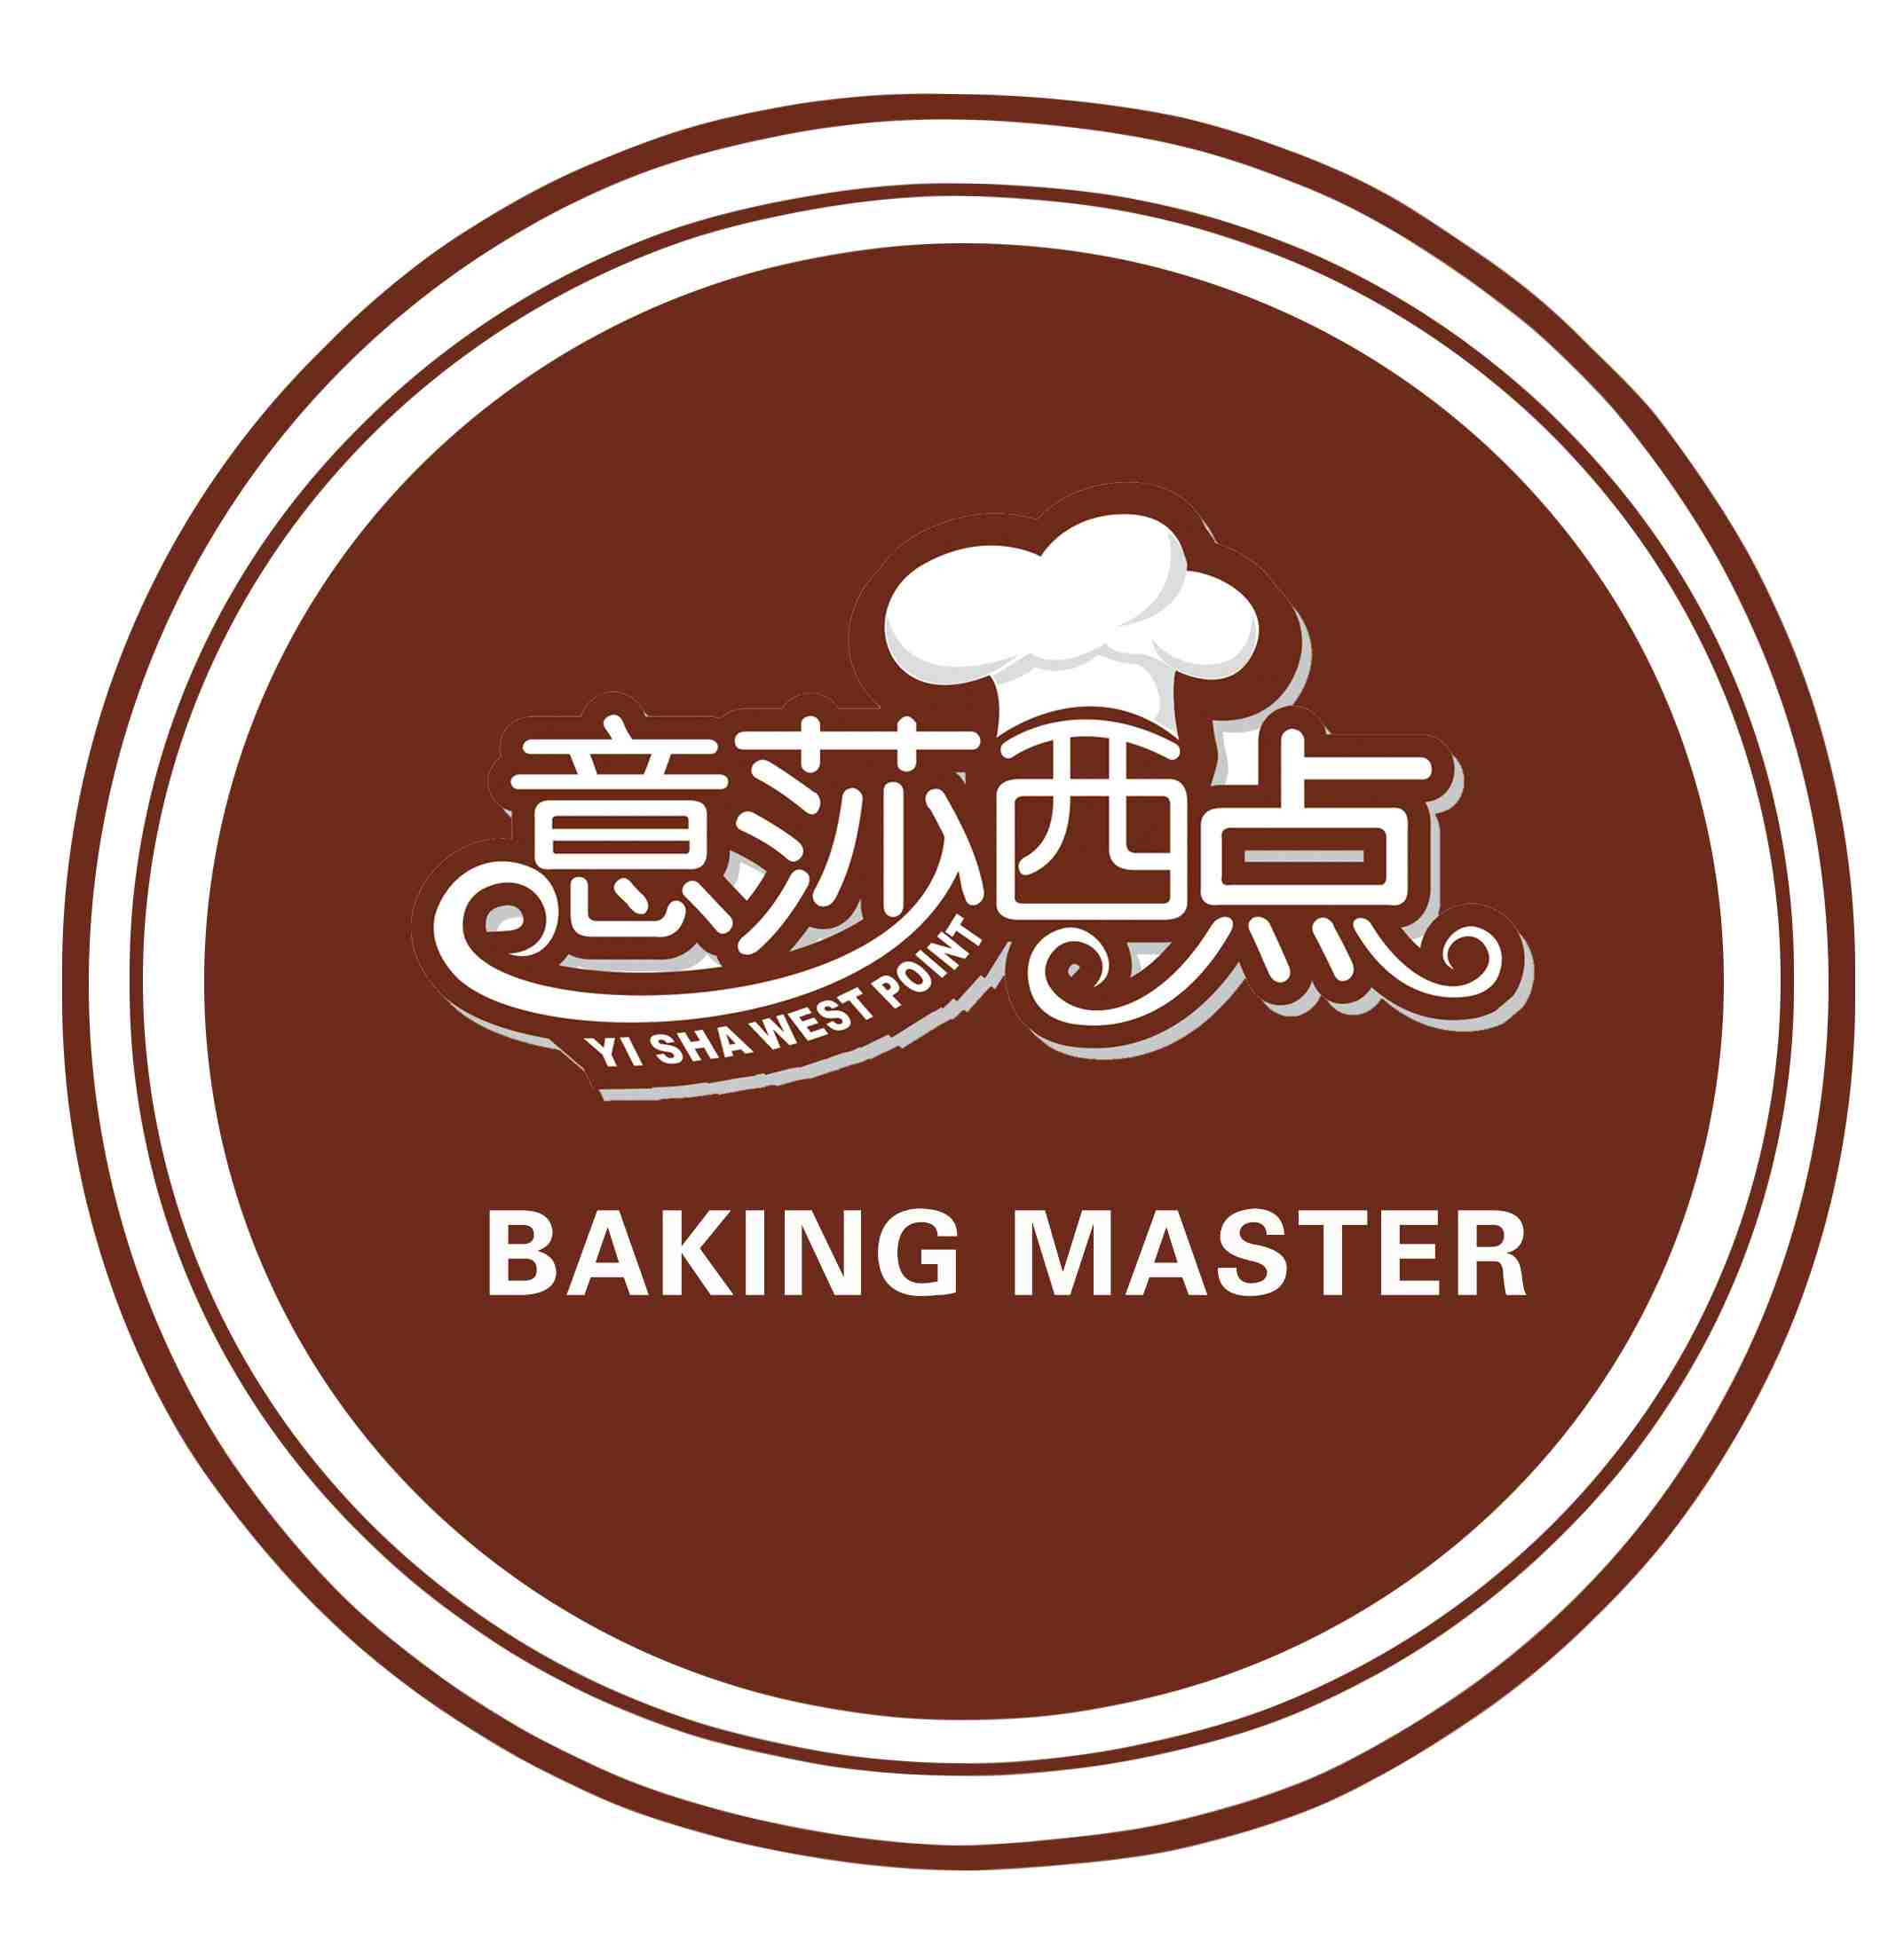 郑州专业烘焙培训|郑州烘焙培训速成班|郑州较好的烘焙培训学校|意莎西点烘焙学院